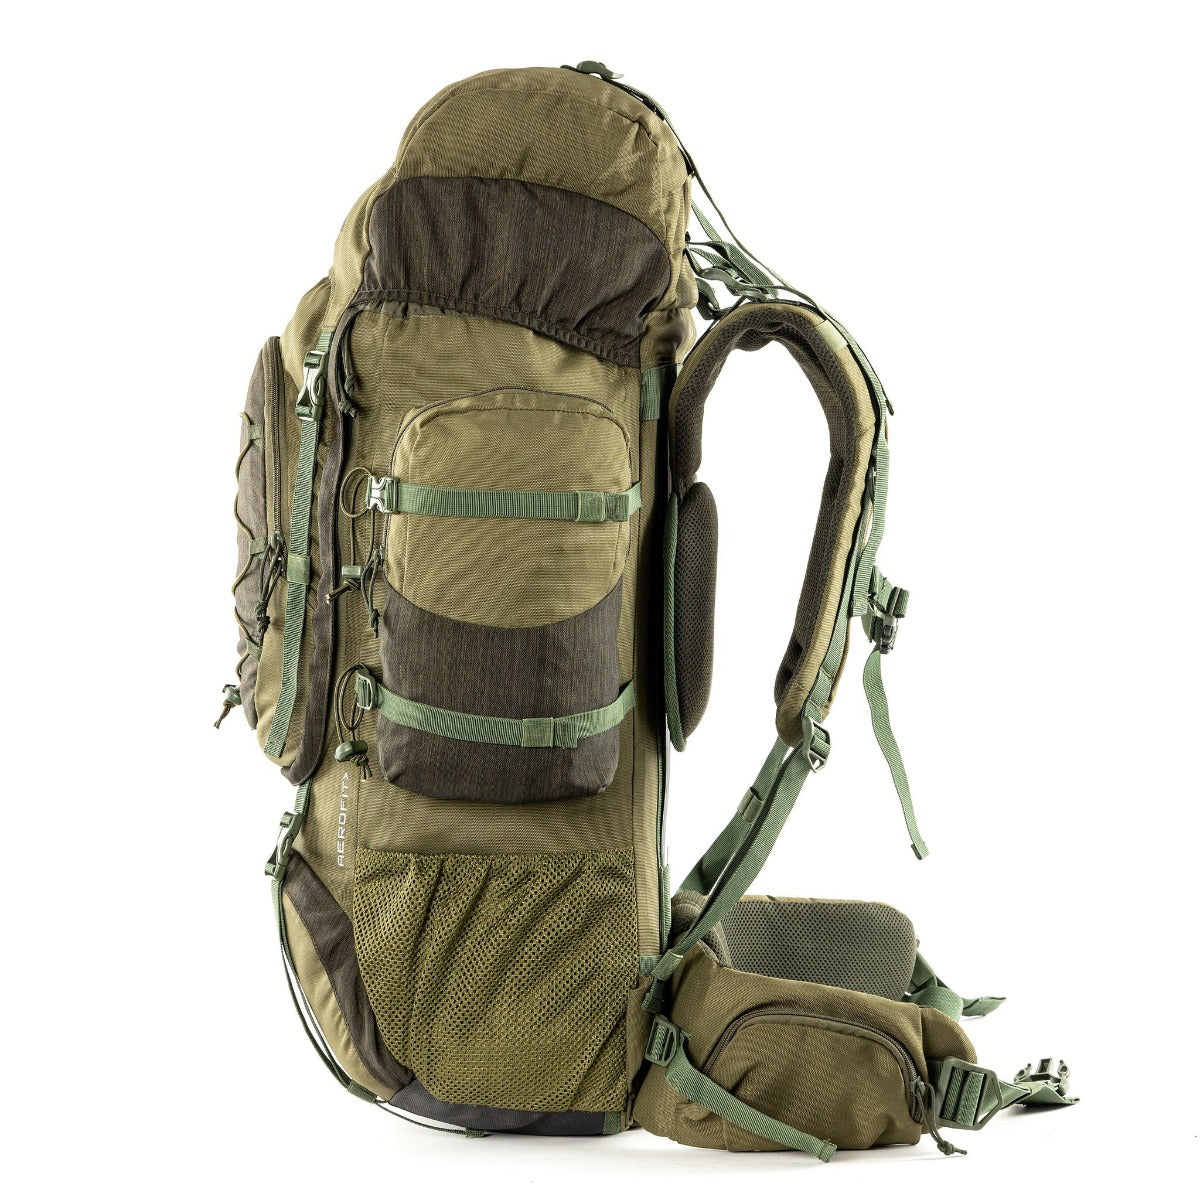 Walker Pro Trekking and Hiking Rucksack - 80 Litre - Olive Green 5